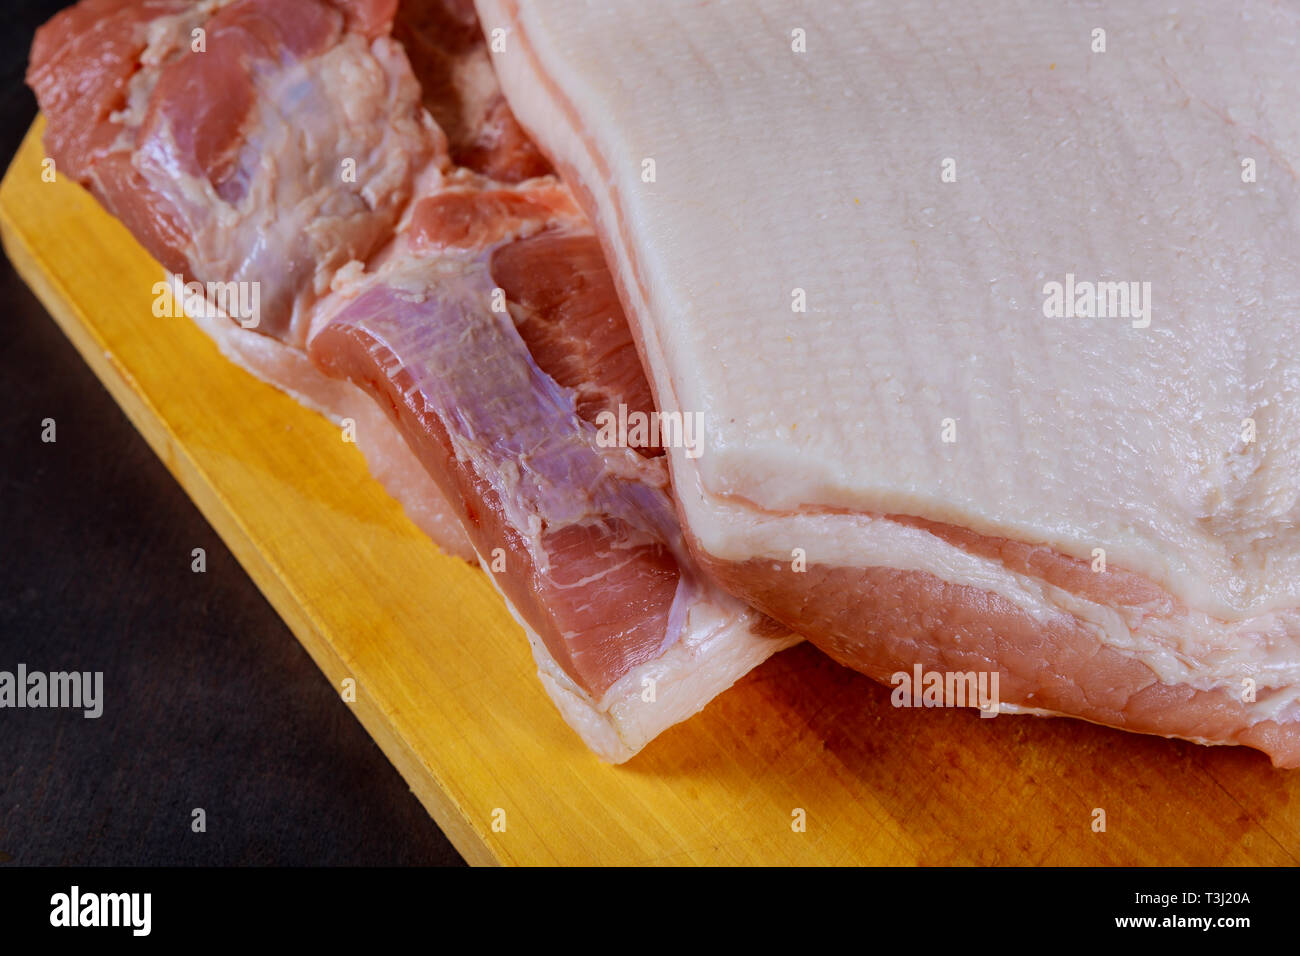 La carne de cerdo cruda sobre fondo de madera Foto de stock